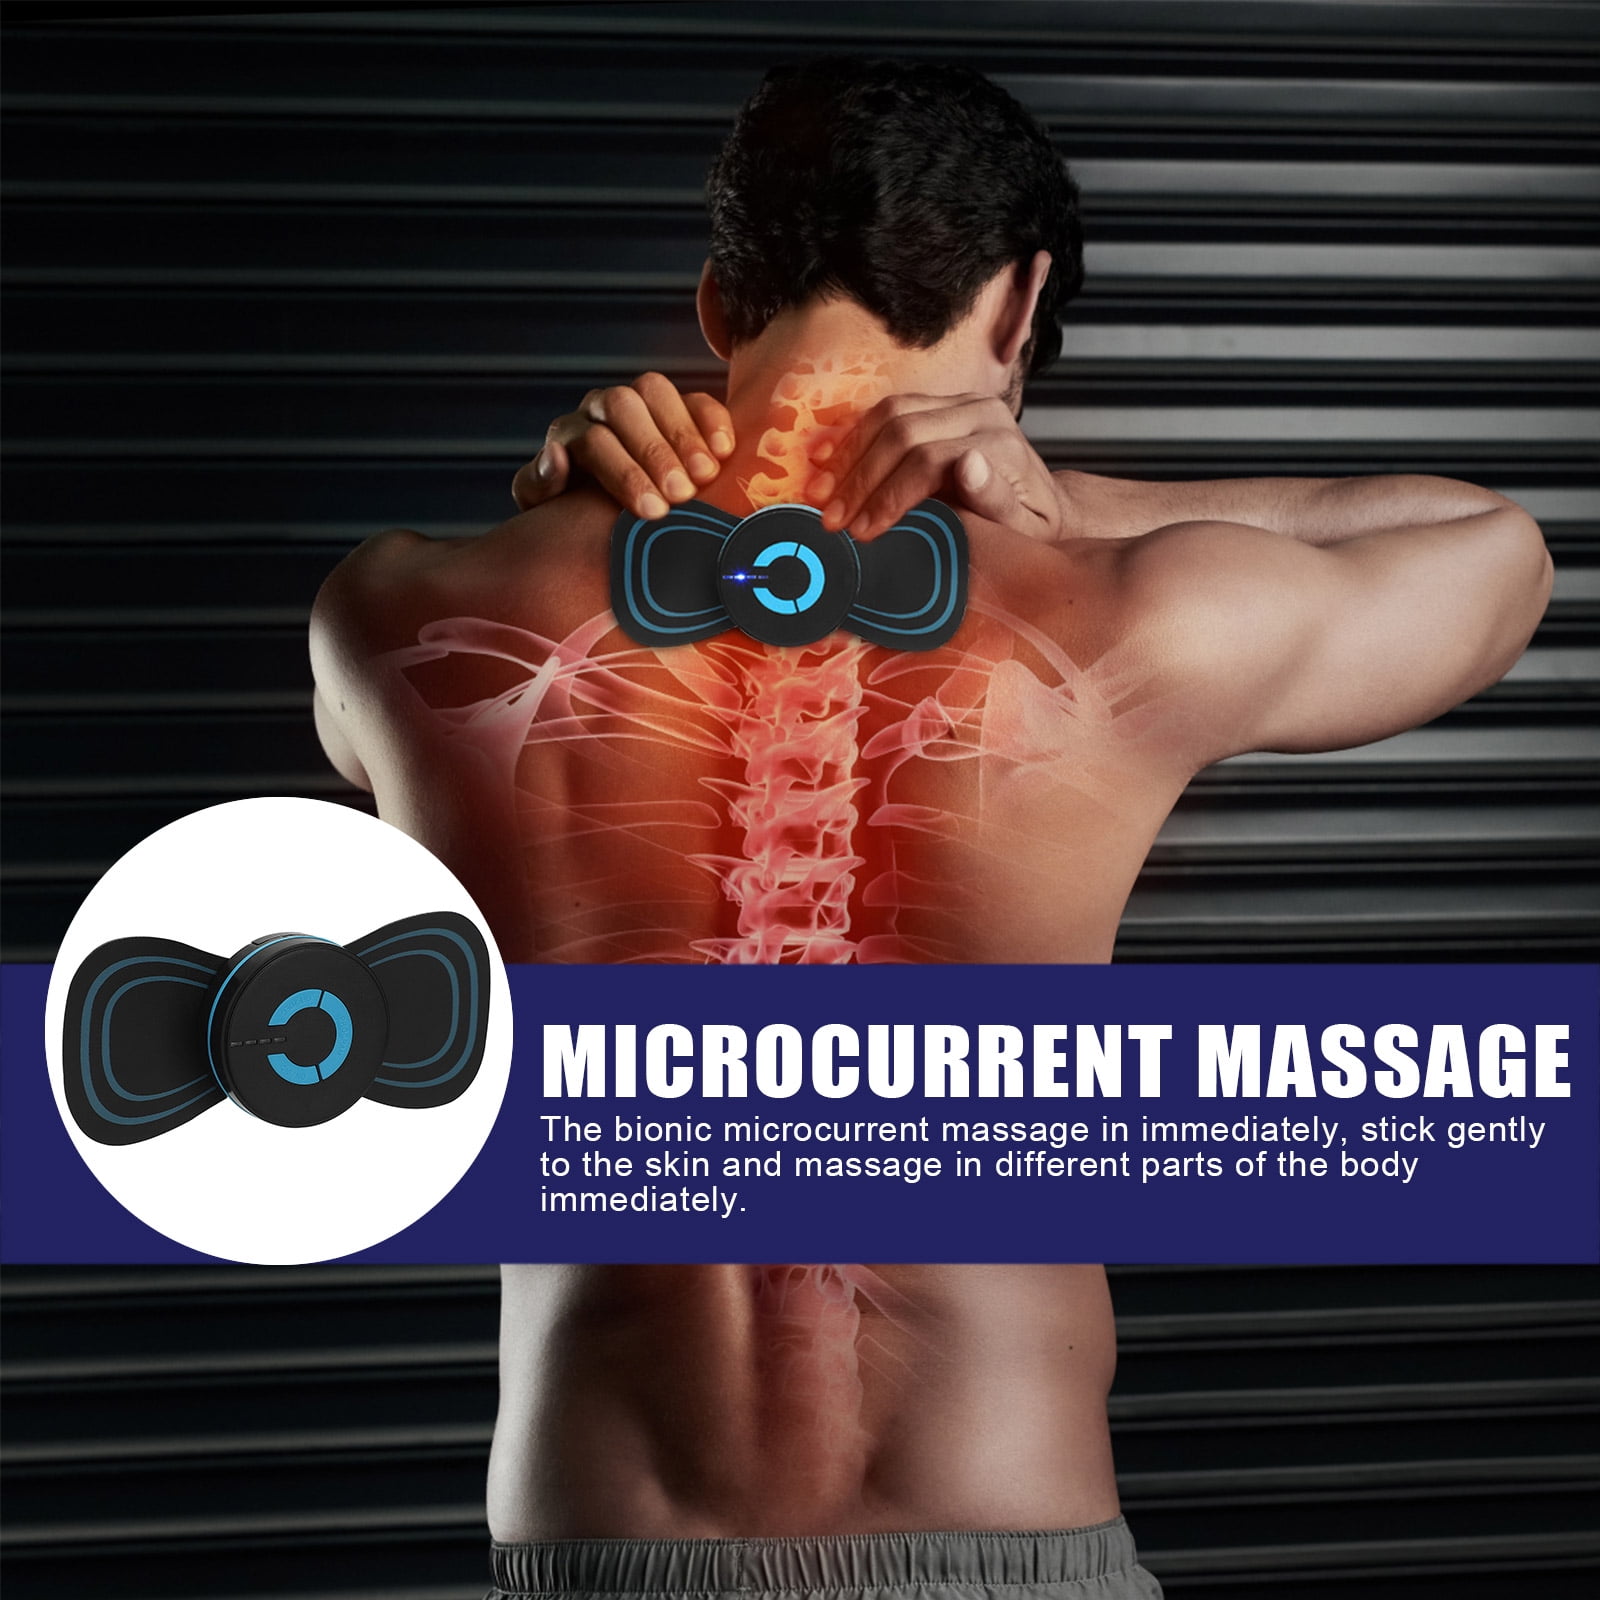 5pc Portable EMS Mini Electric Neck Back Massager Cervical Massage Patch Stimulator, Size: 17 x 6 cm, Blue